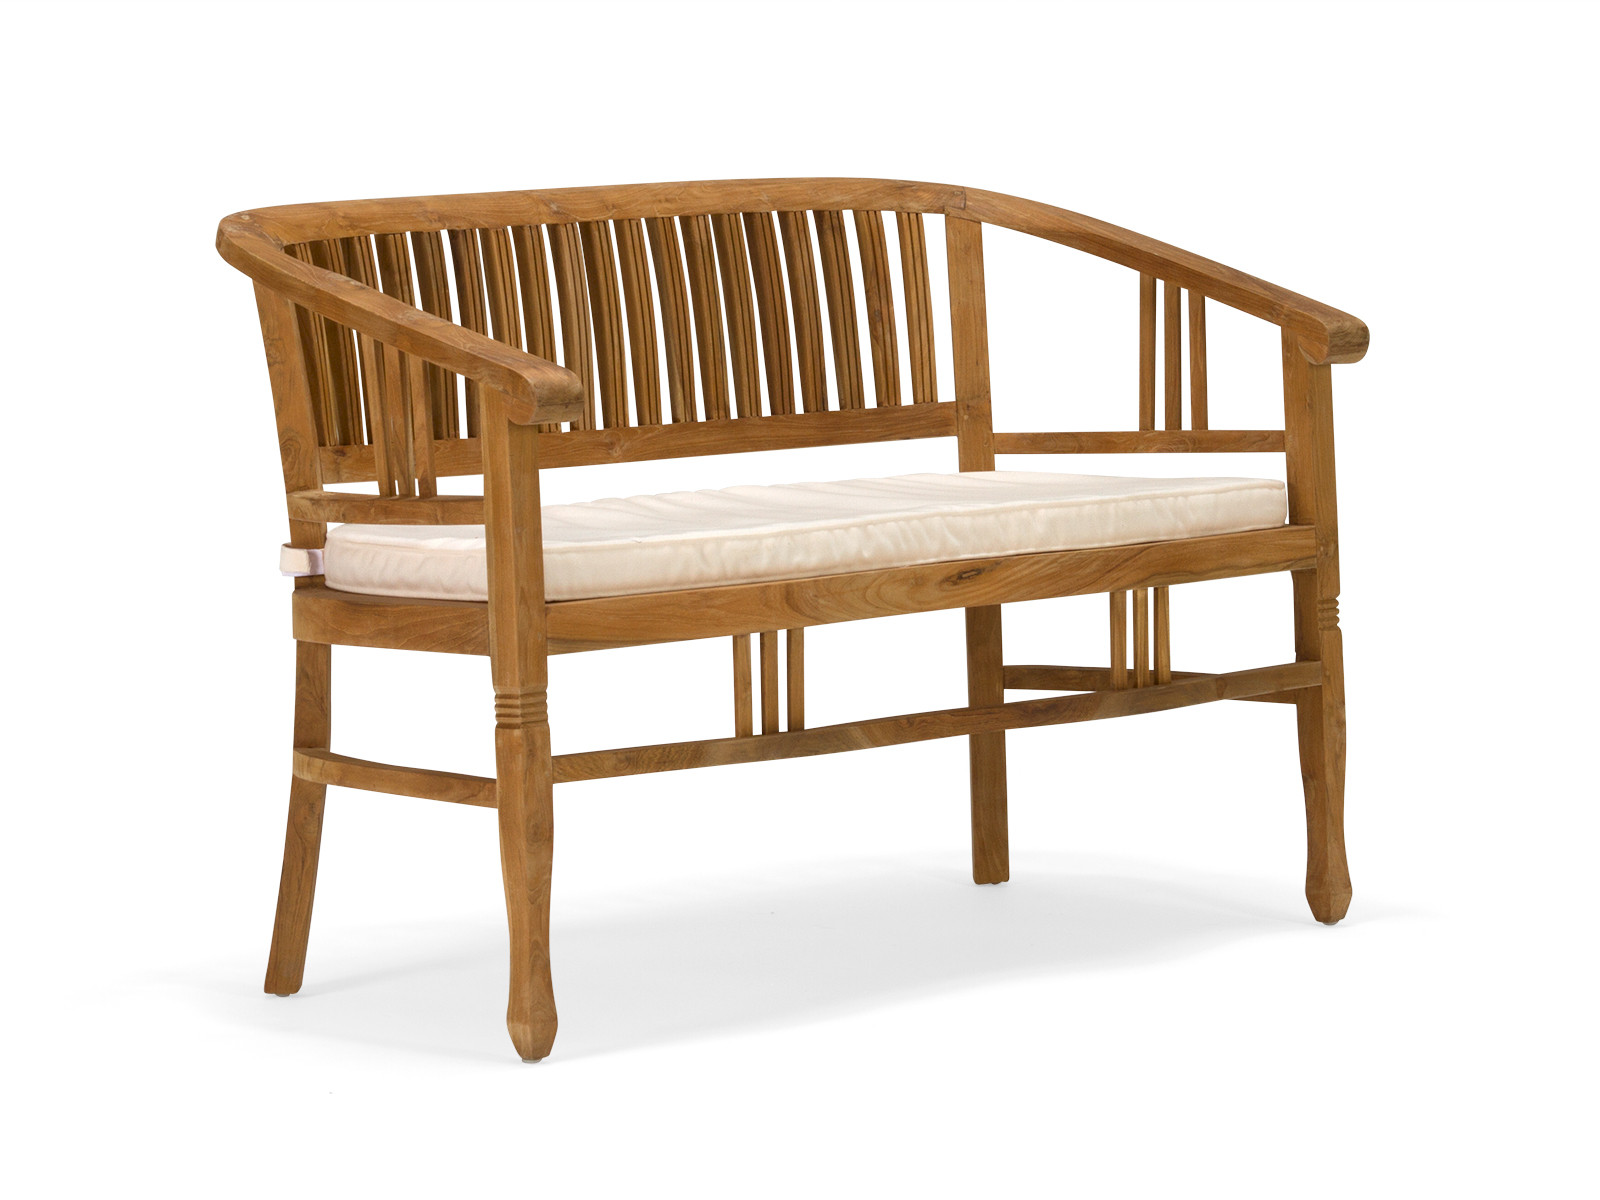 Ws 83 Sleek Teakwood Bench Sofa Details Bic Furniture India